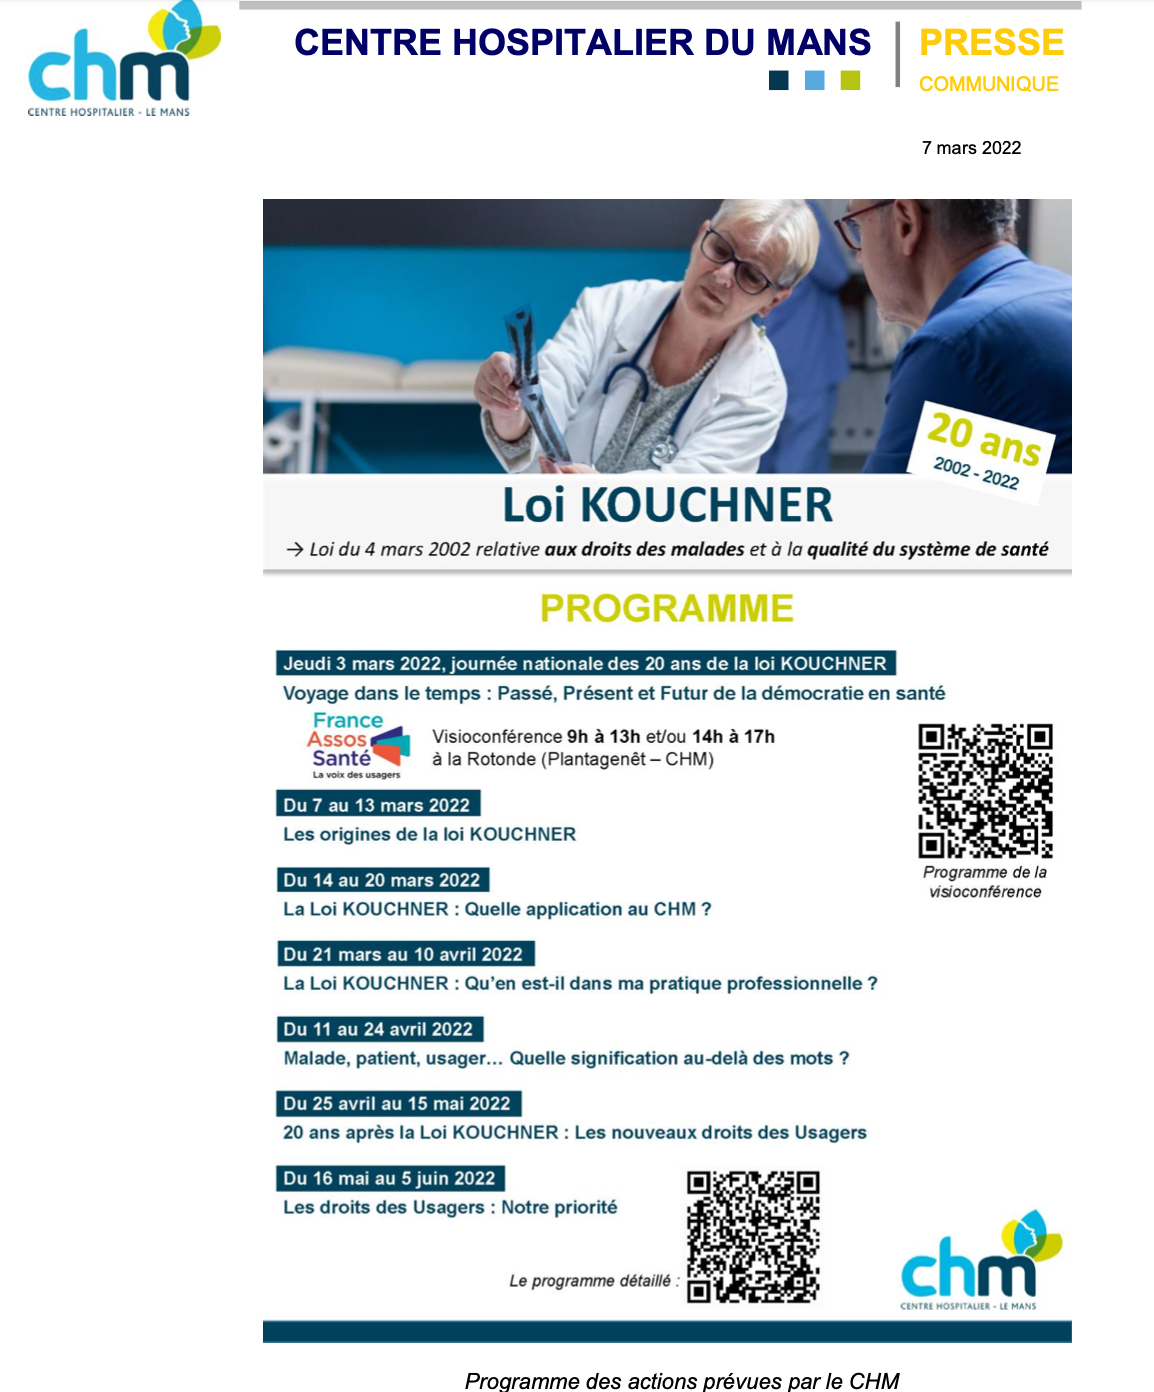 La Loi Kouchner fête ses 20 ans : le CH du Mans met en place différentes actions à destination des usagers et des professionnels